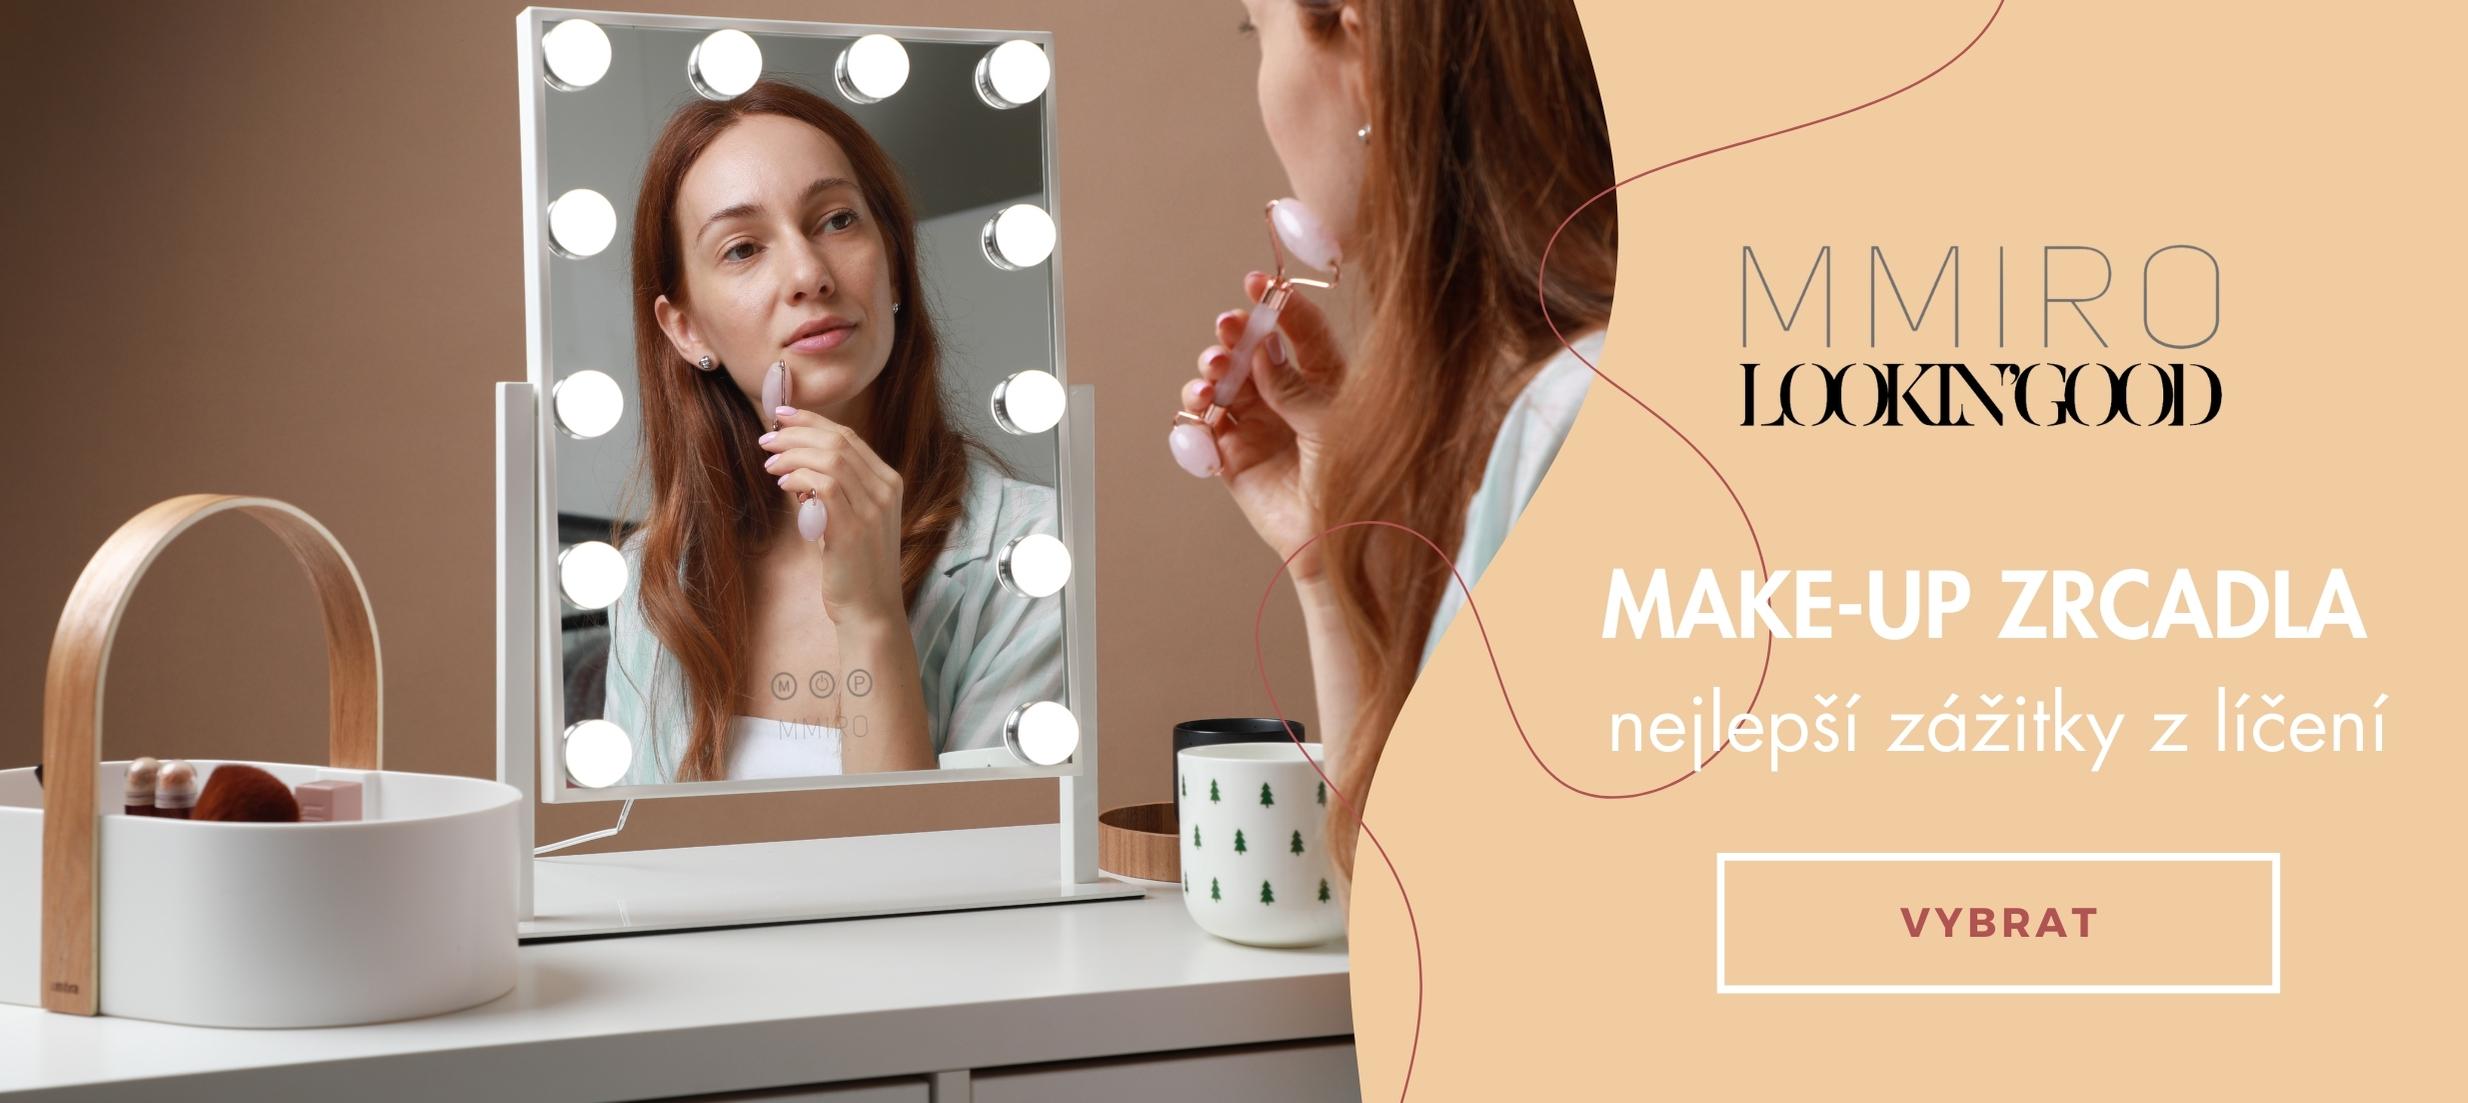 Make-up zrcadla s LED osvětlením MMIRO